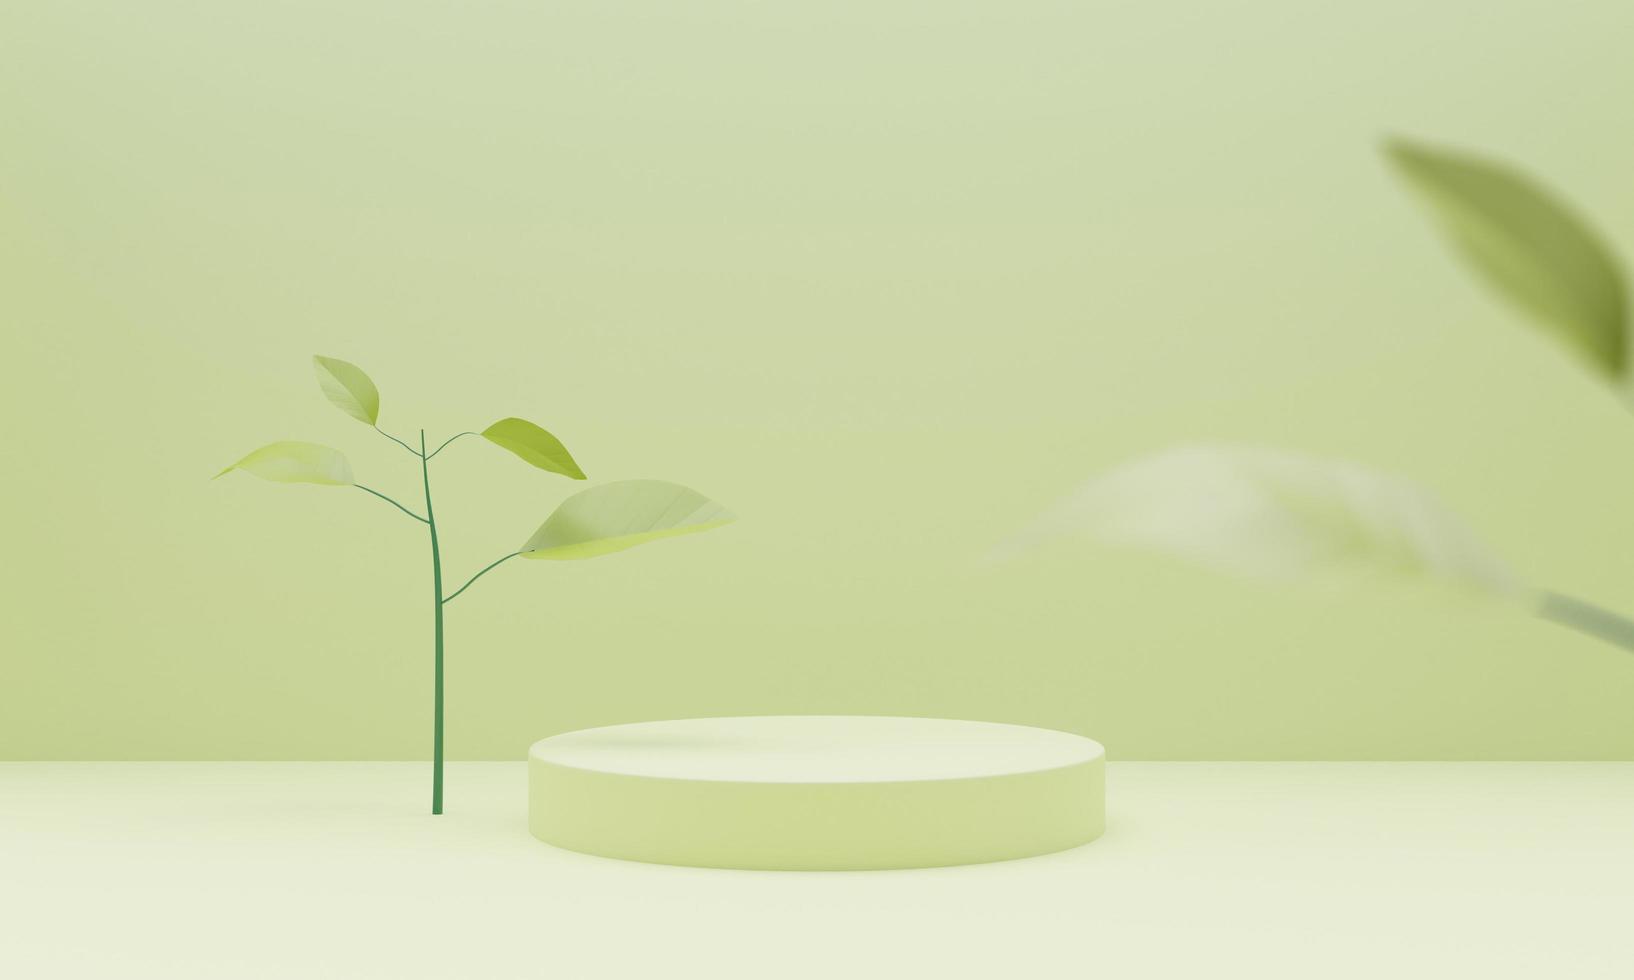 fundo de pódio 3d verde com cilindro geométrico simula o pódio no fundo verde com folhas de plantas verdes. mostra de apresentação do produto, pedestal ou plataforma. ilustração de renderização 3D. foto